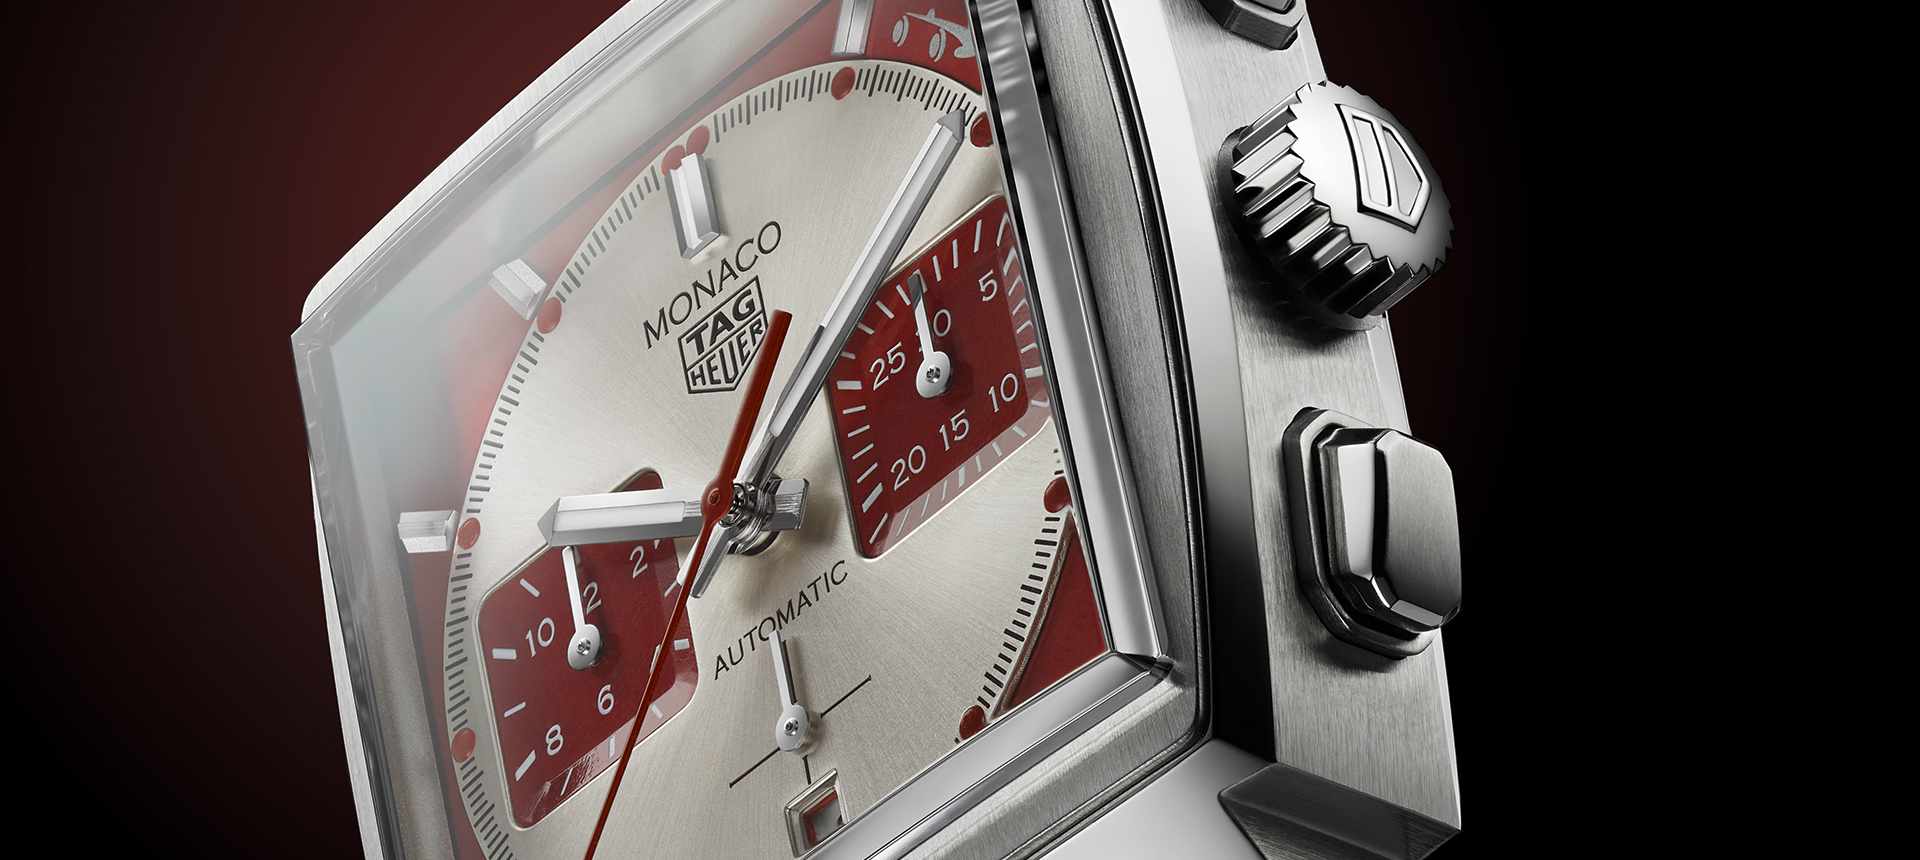 TAG Heuer создал часы для Автомобильного клуба Монако